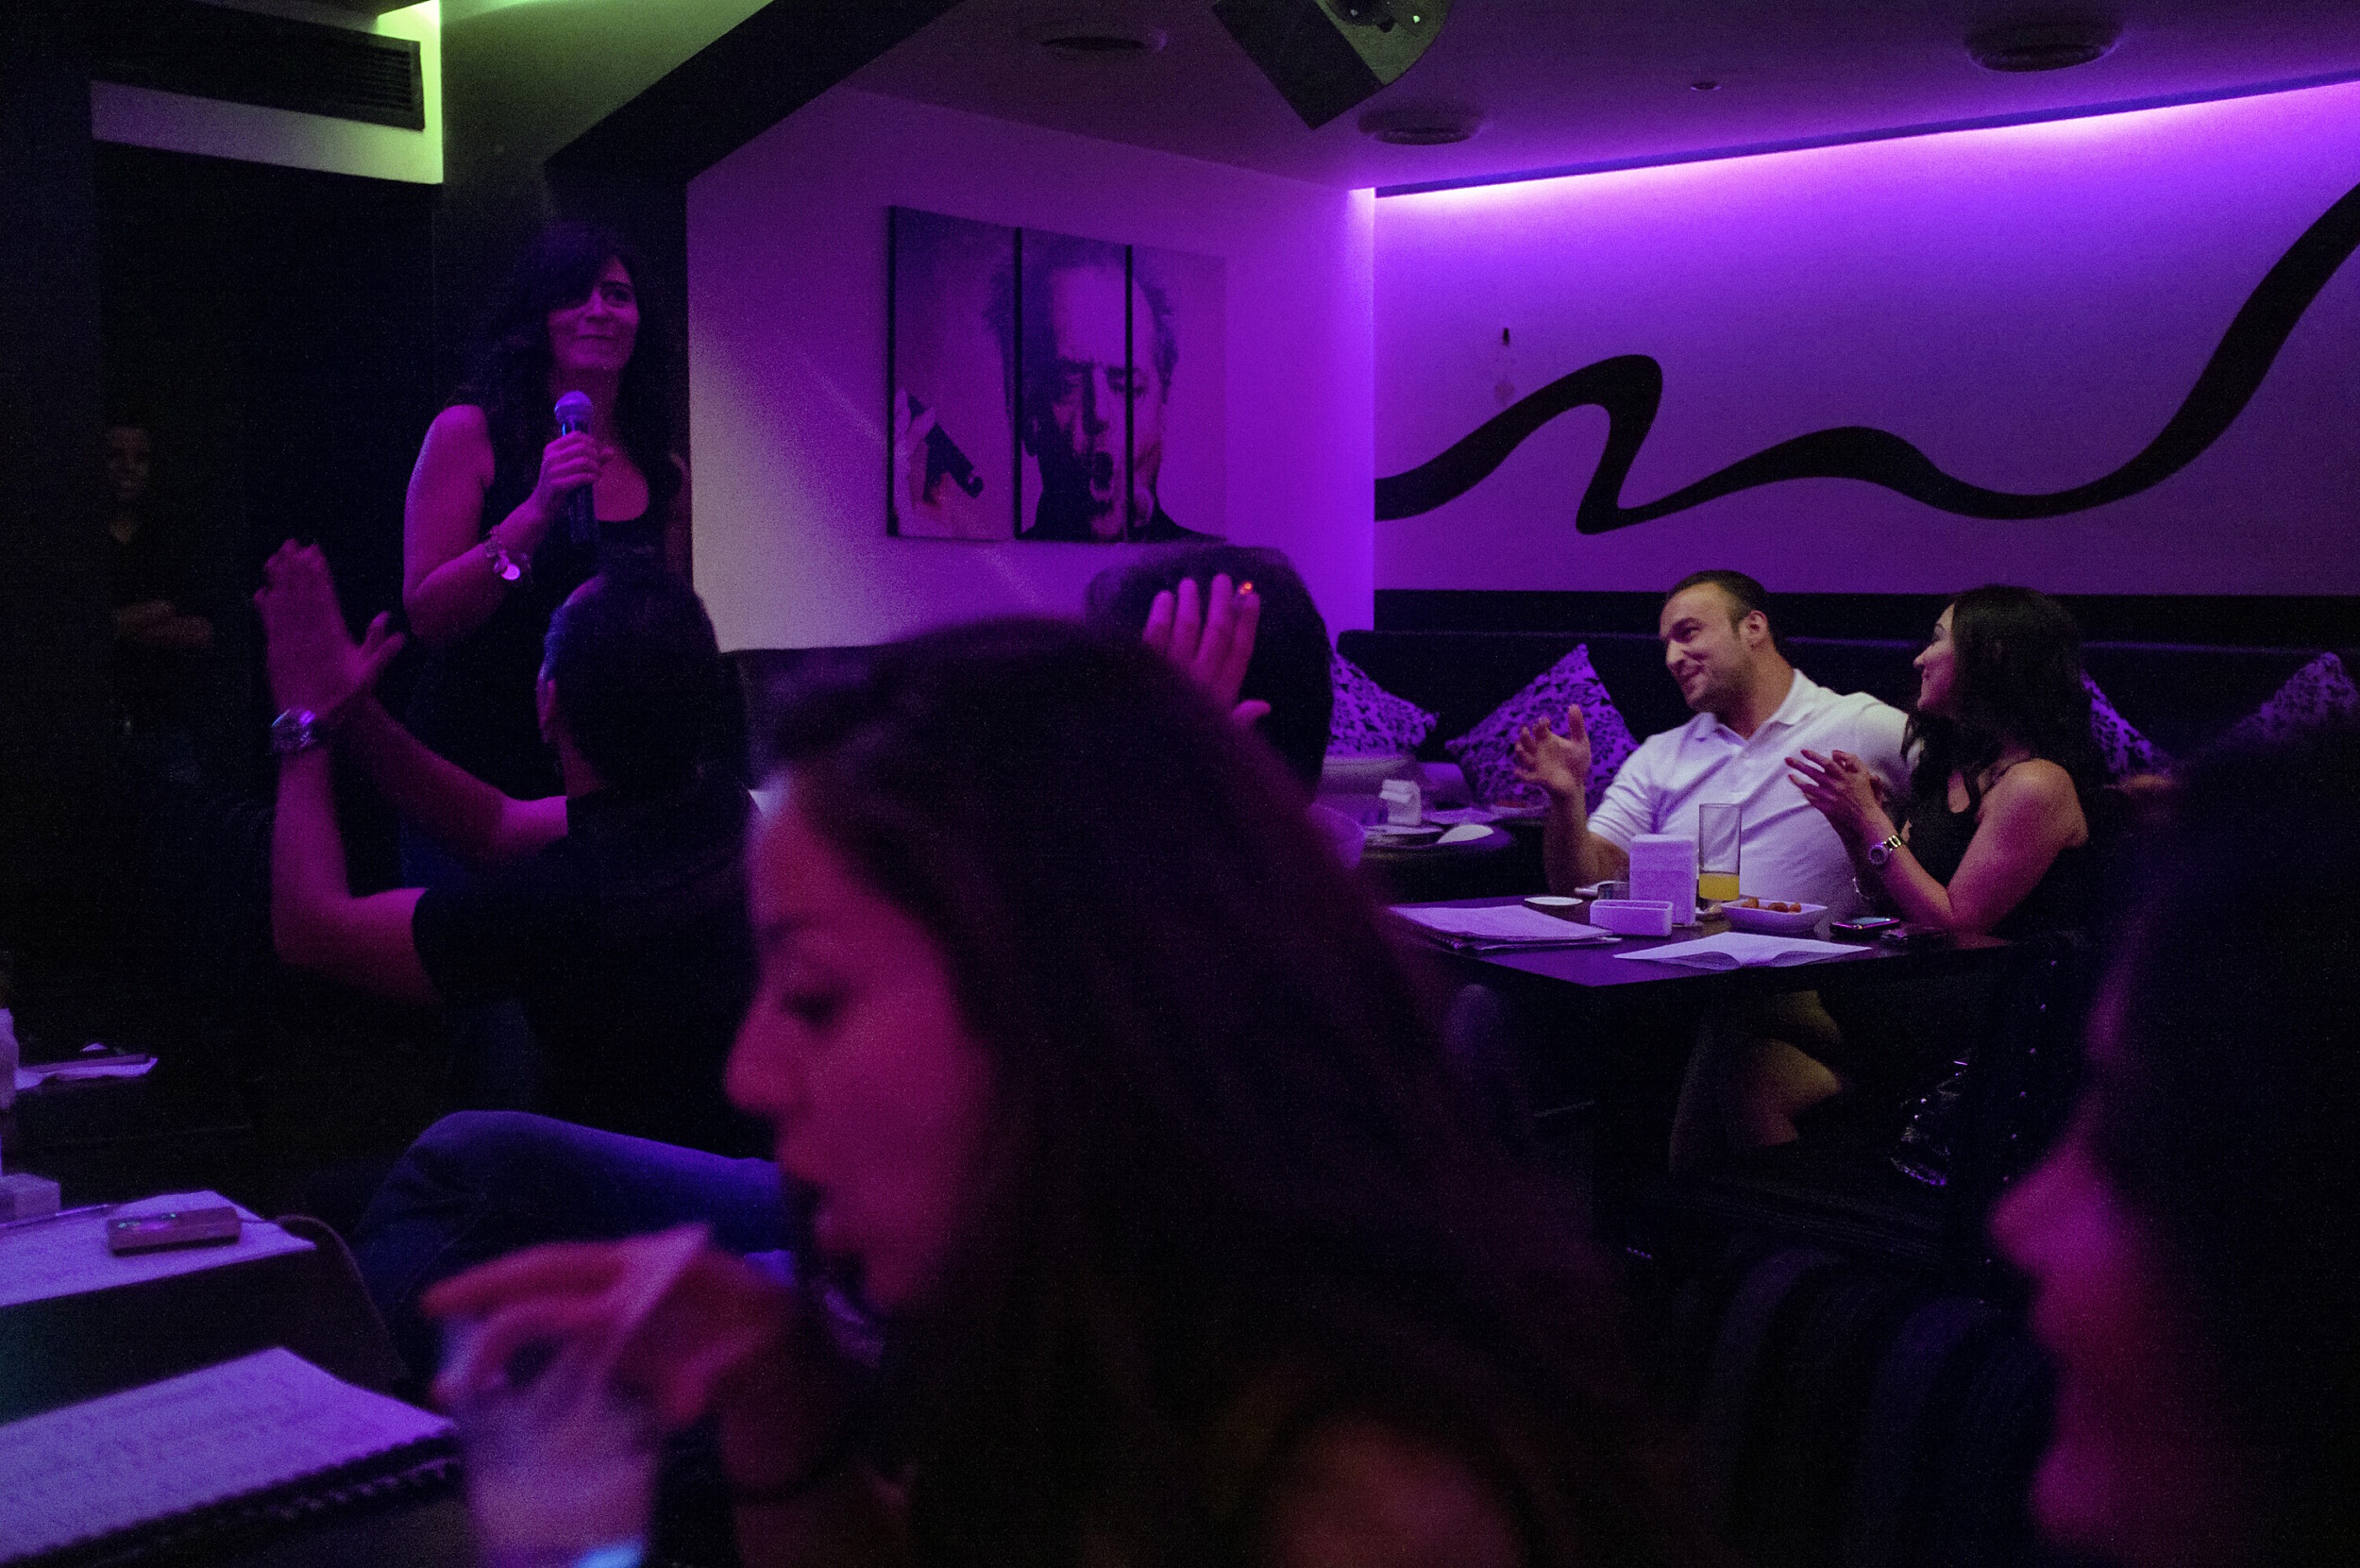 Damascus elite at a karaoke bar.